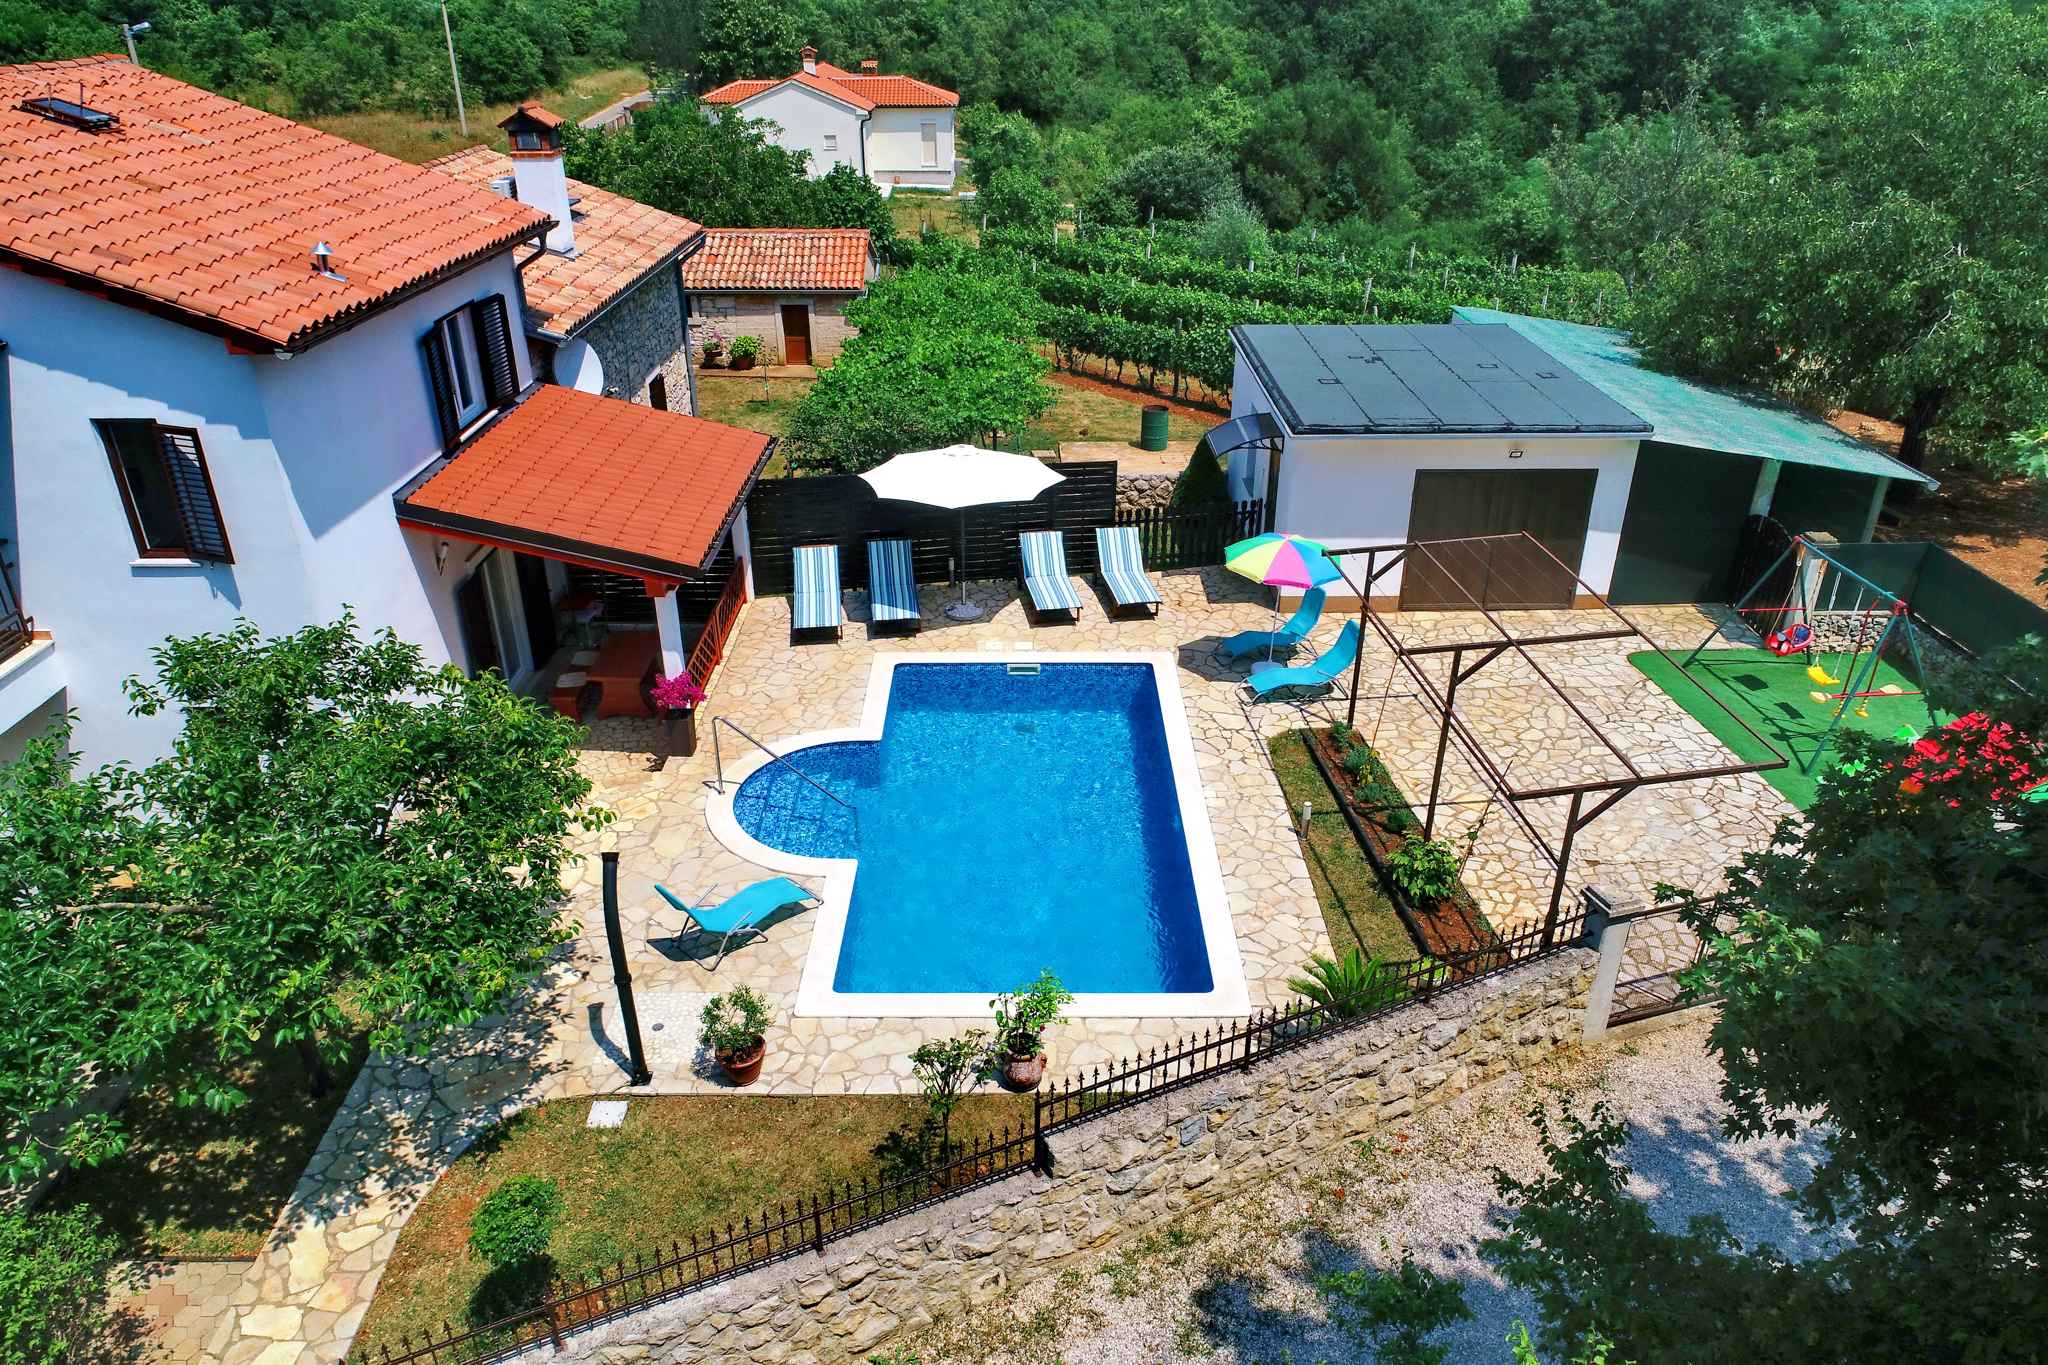 Ferienhaus mit Pool in ruhiger Lage für Famil  in Kroatien